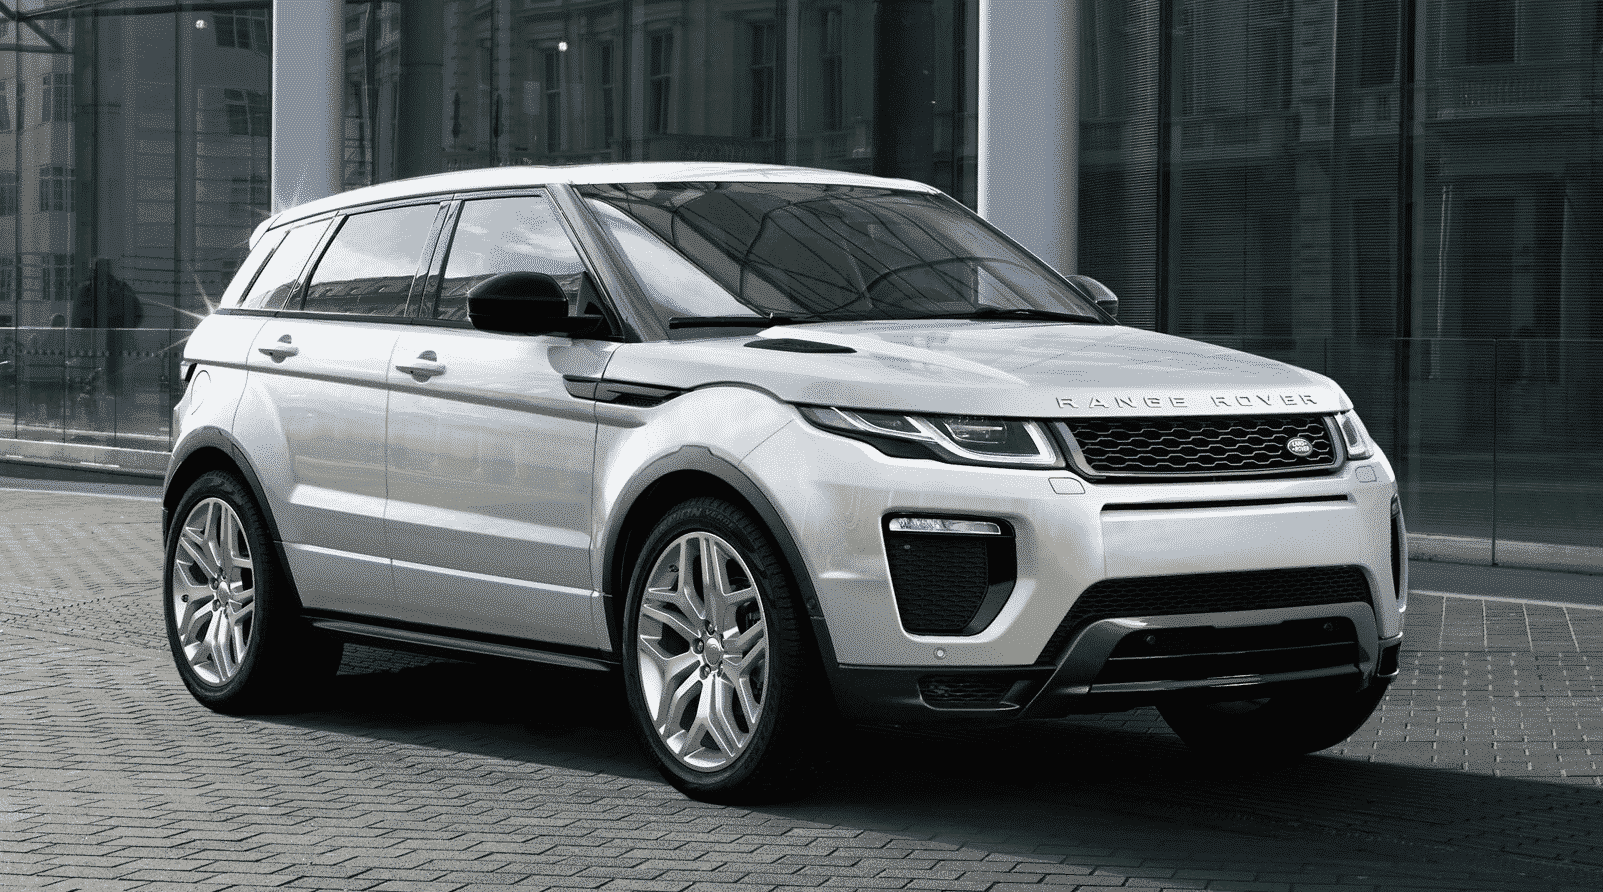 Méca : l'entretien des boîtes de vitesses et de transfert Land Rover